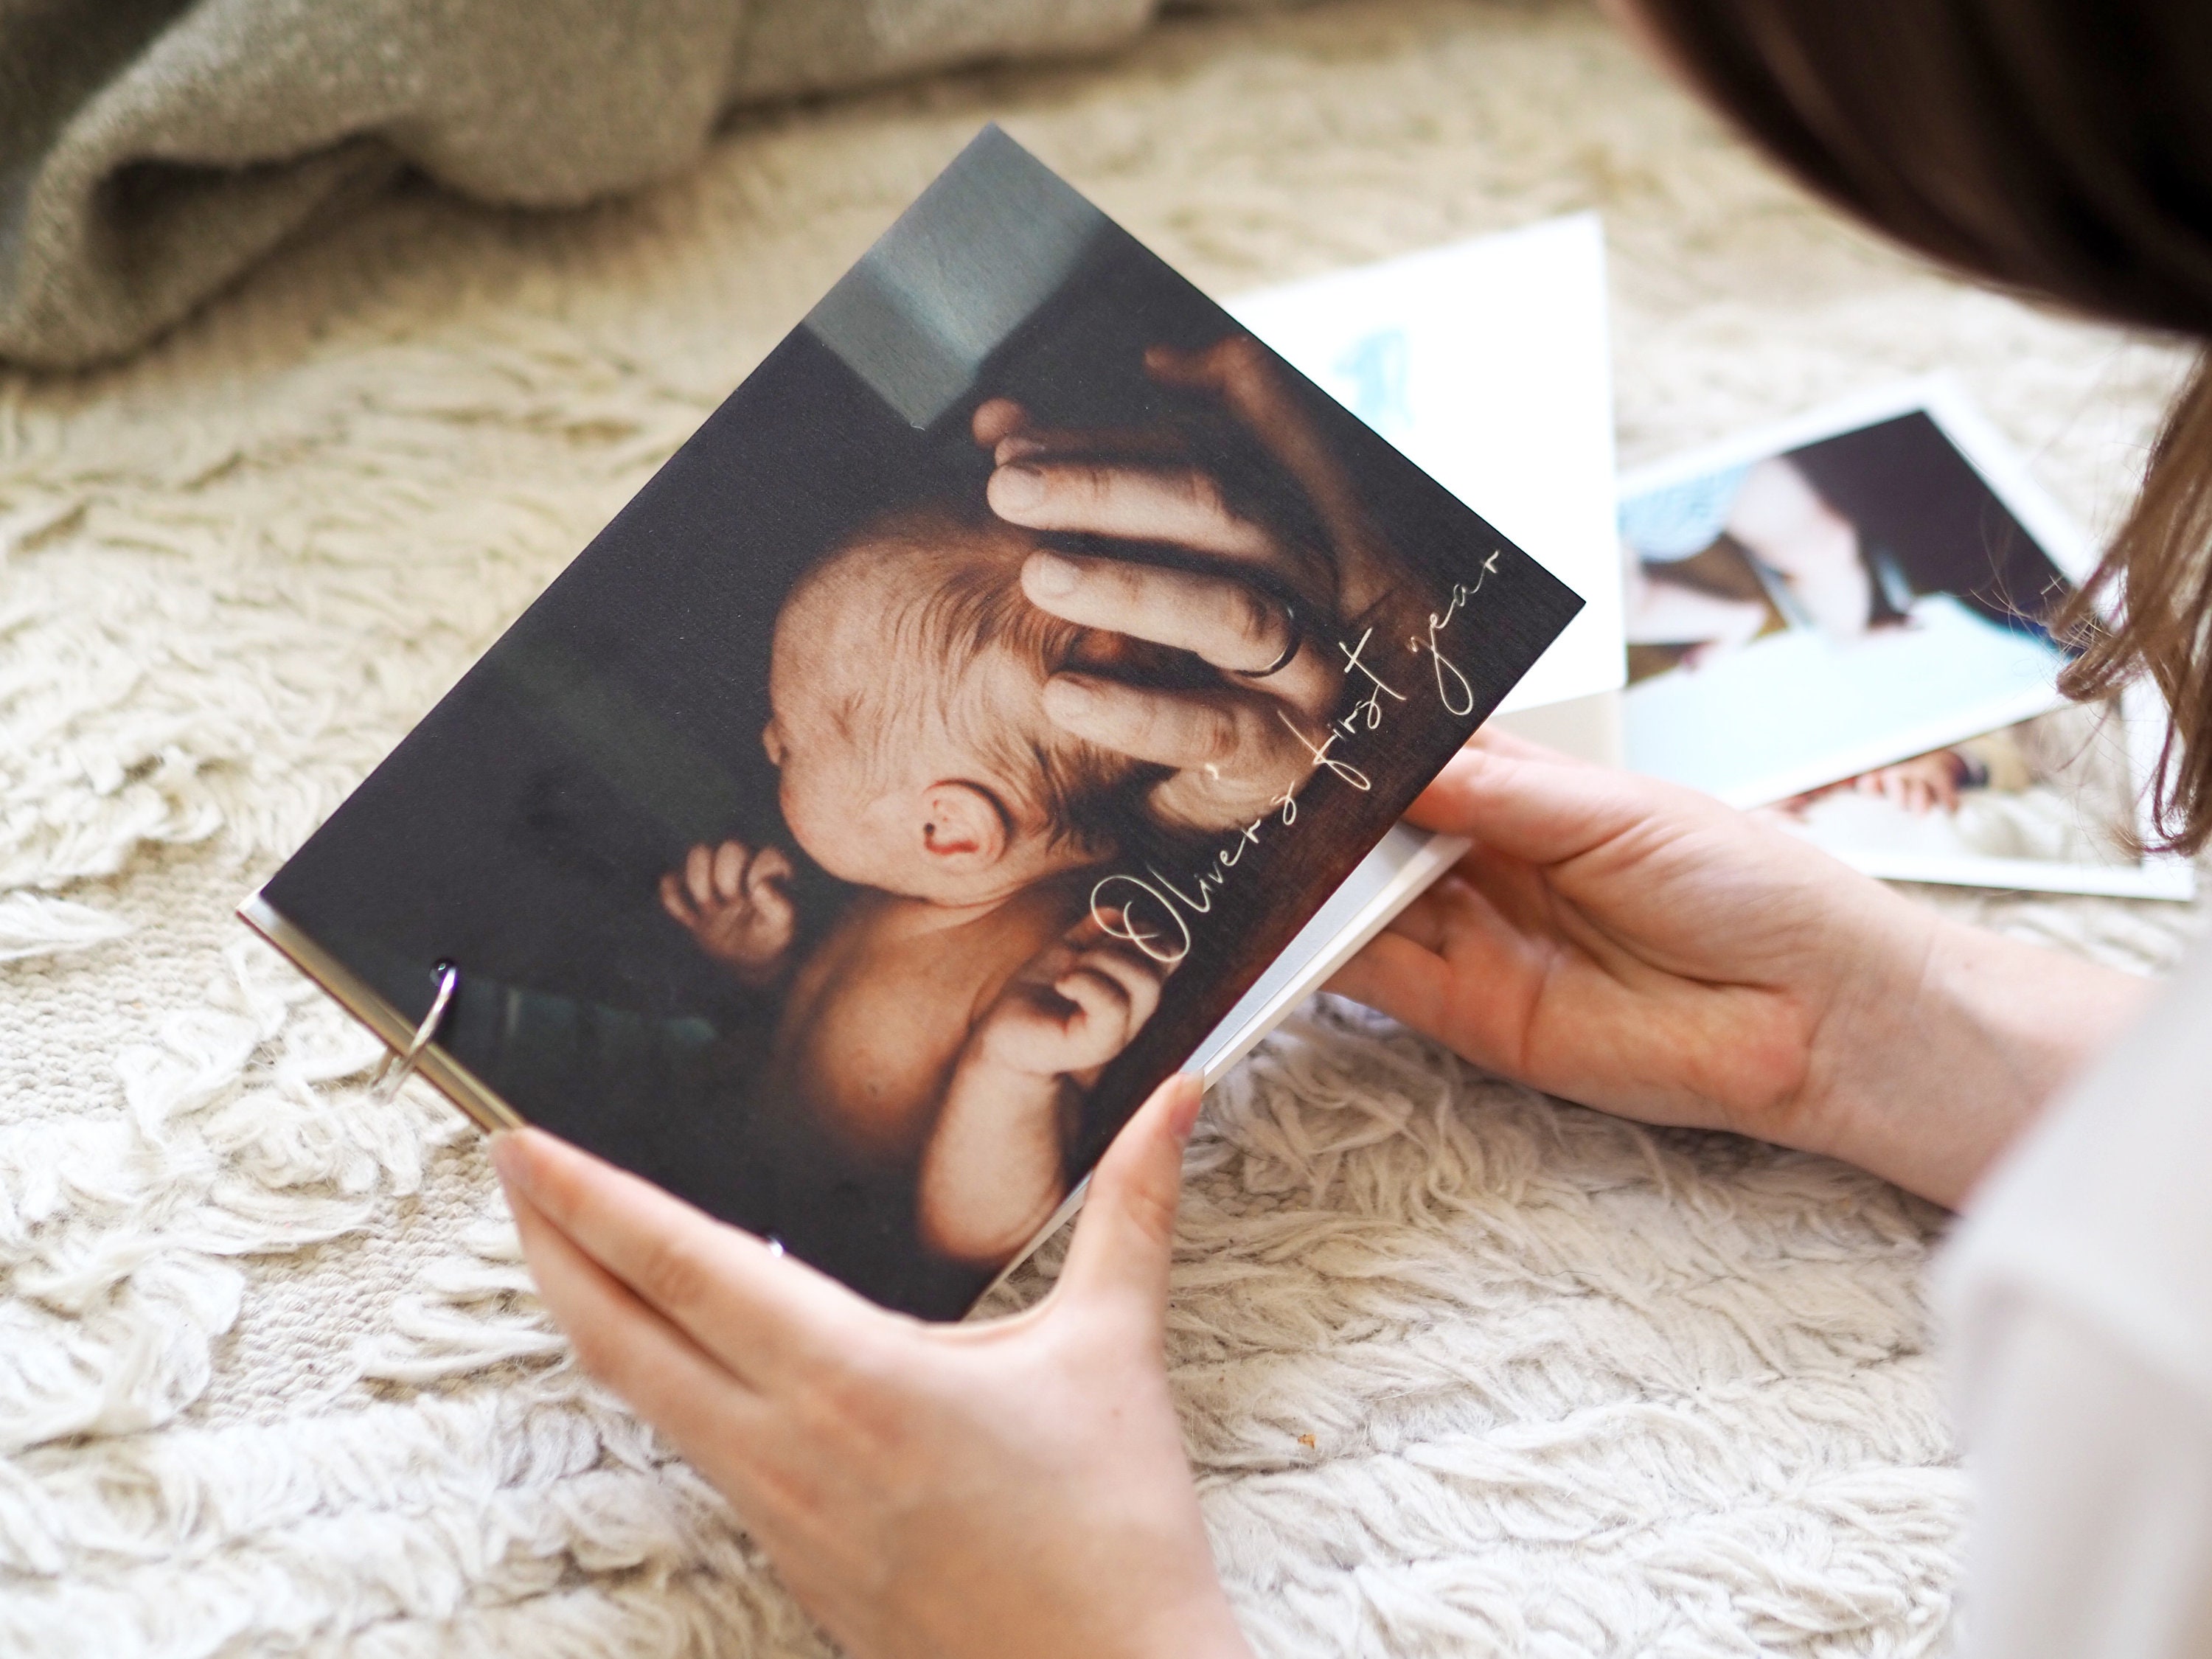 Baby Photo Album, Self-adhesive Baby Memory Book, Personalized Baby Boy /  Baby Girl Scrapbook Album, Hand Made Baby Shower / Birthday Gift 